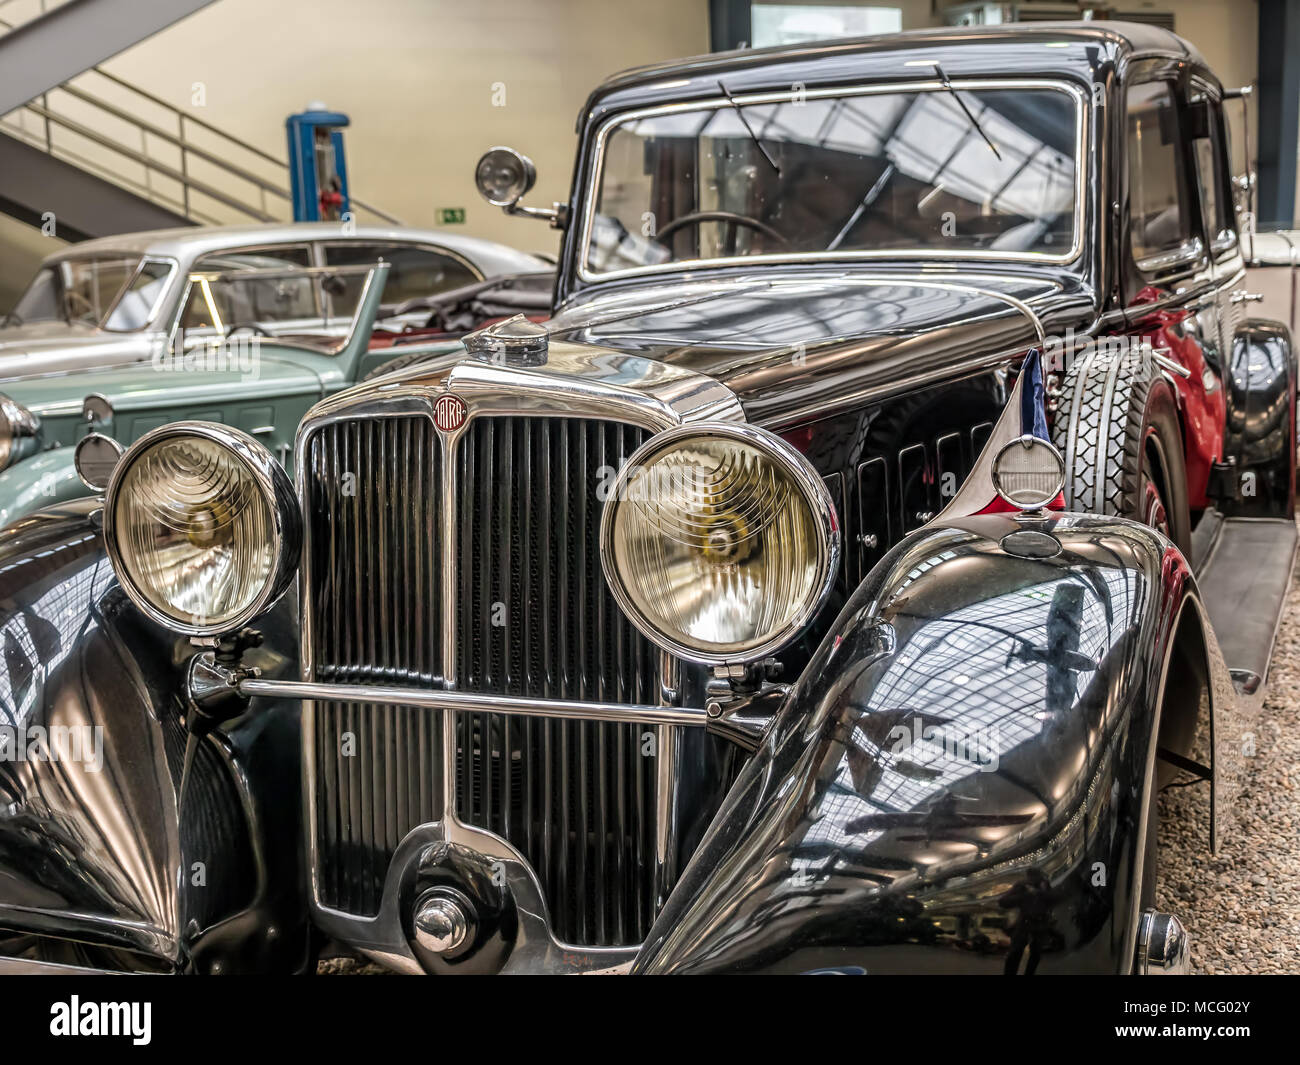 PRAGUE, RÉPUBLIQUE TCHÈQUE - 8 mars 2017 : Tatra 80 Oldtimer, à partir de 1935, présenté dans le Musée Technique National de Prague Banque D'Images